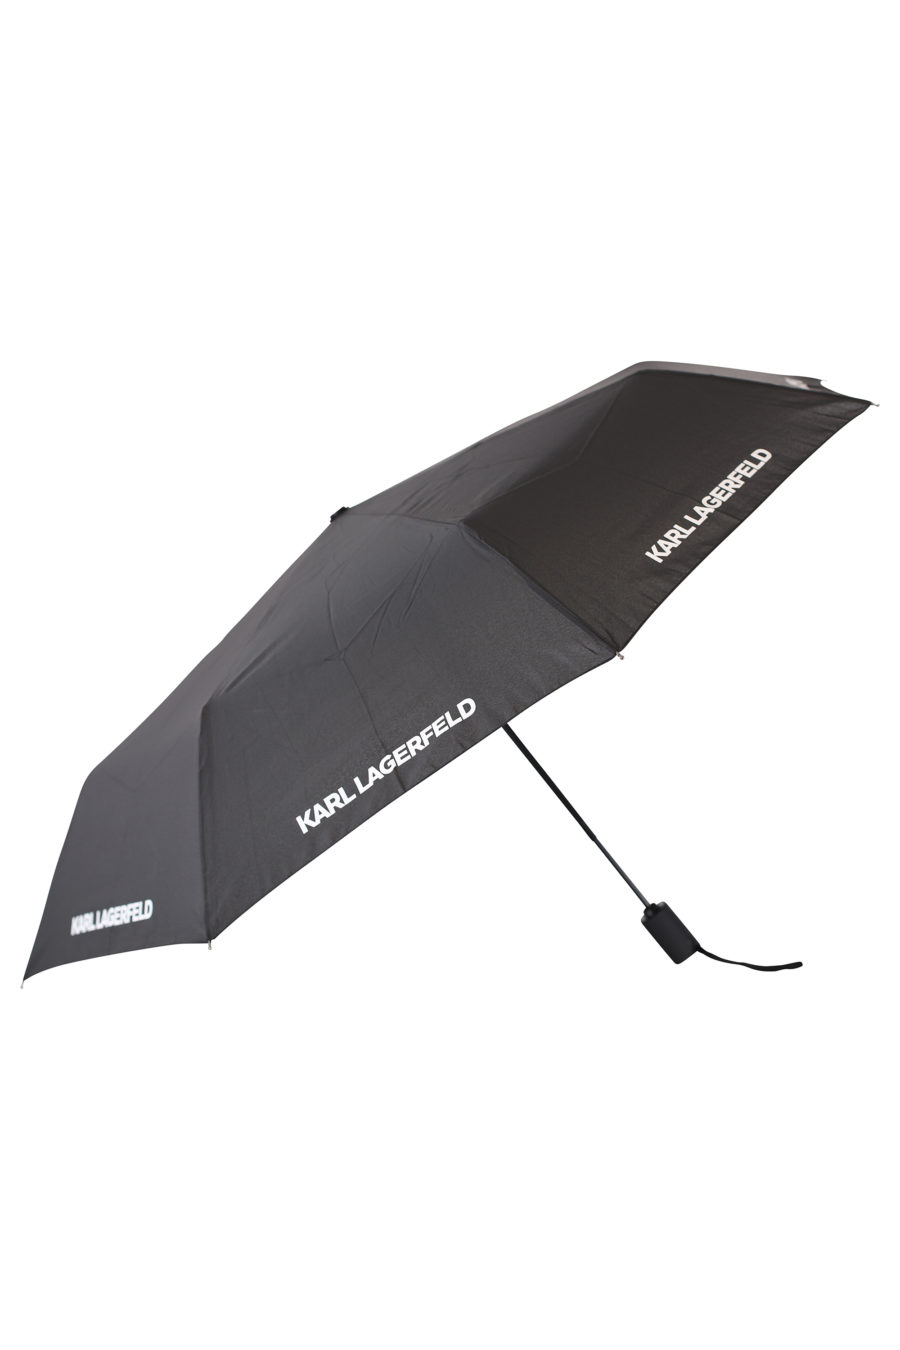 Paraguas negro con logo de la marca - IMG 2156